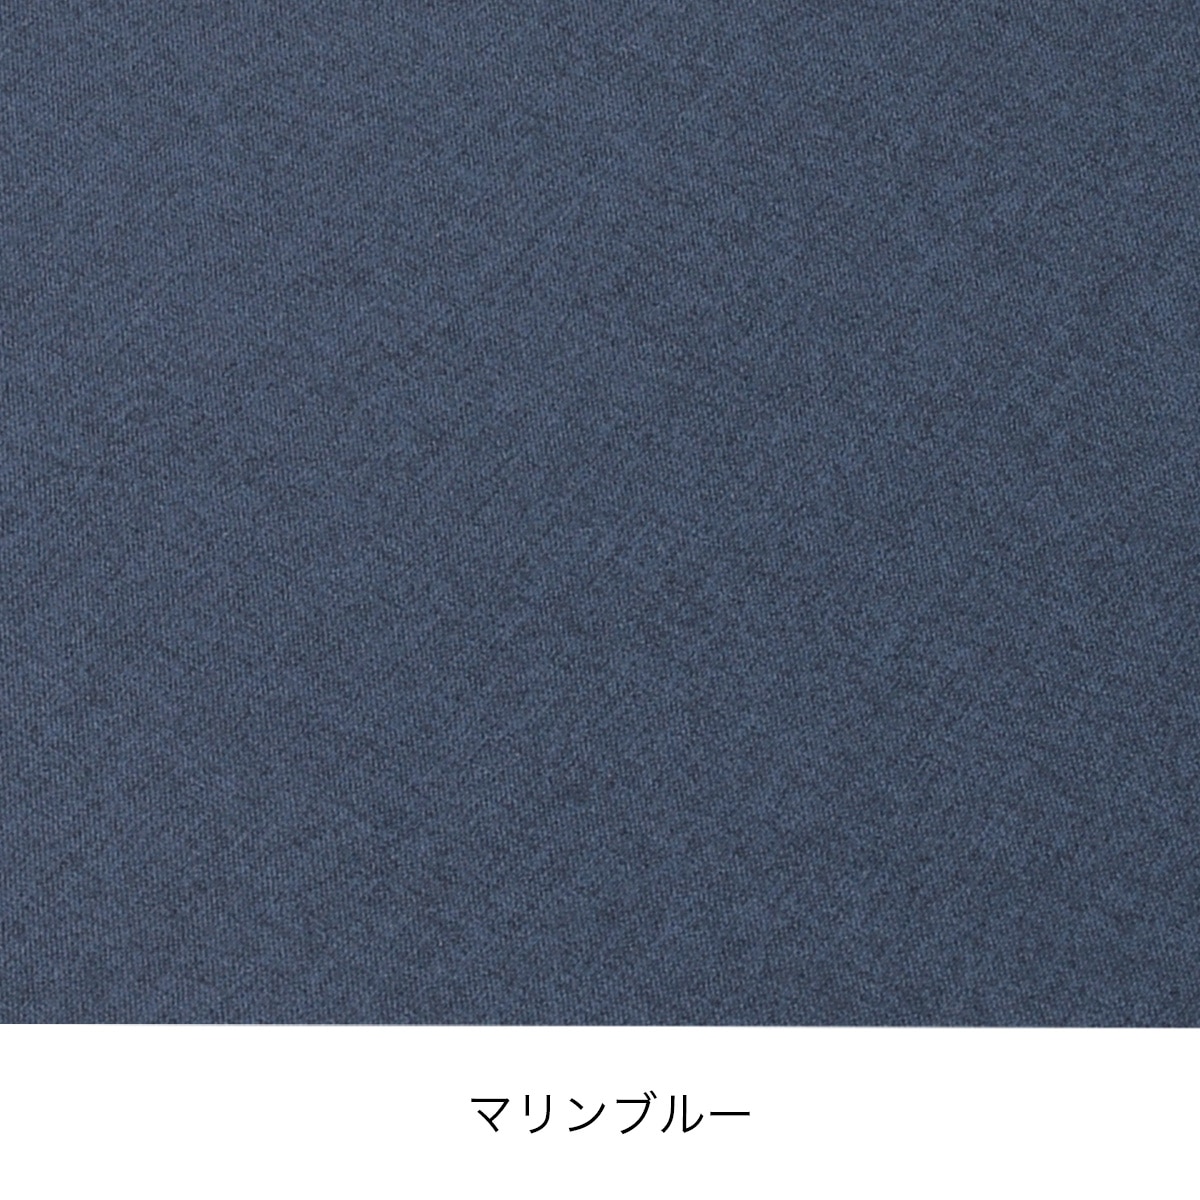  床プニフィット専用カバー(春夏用)